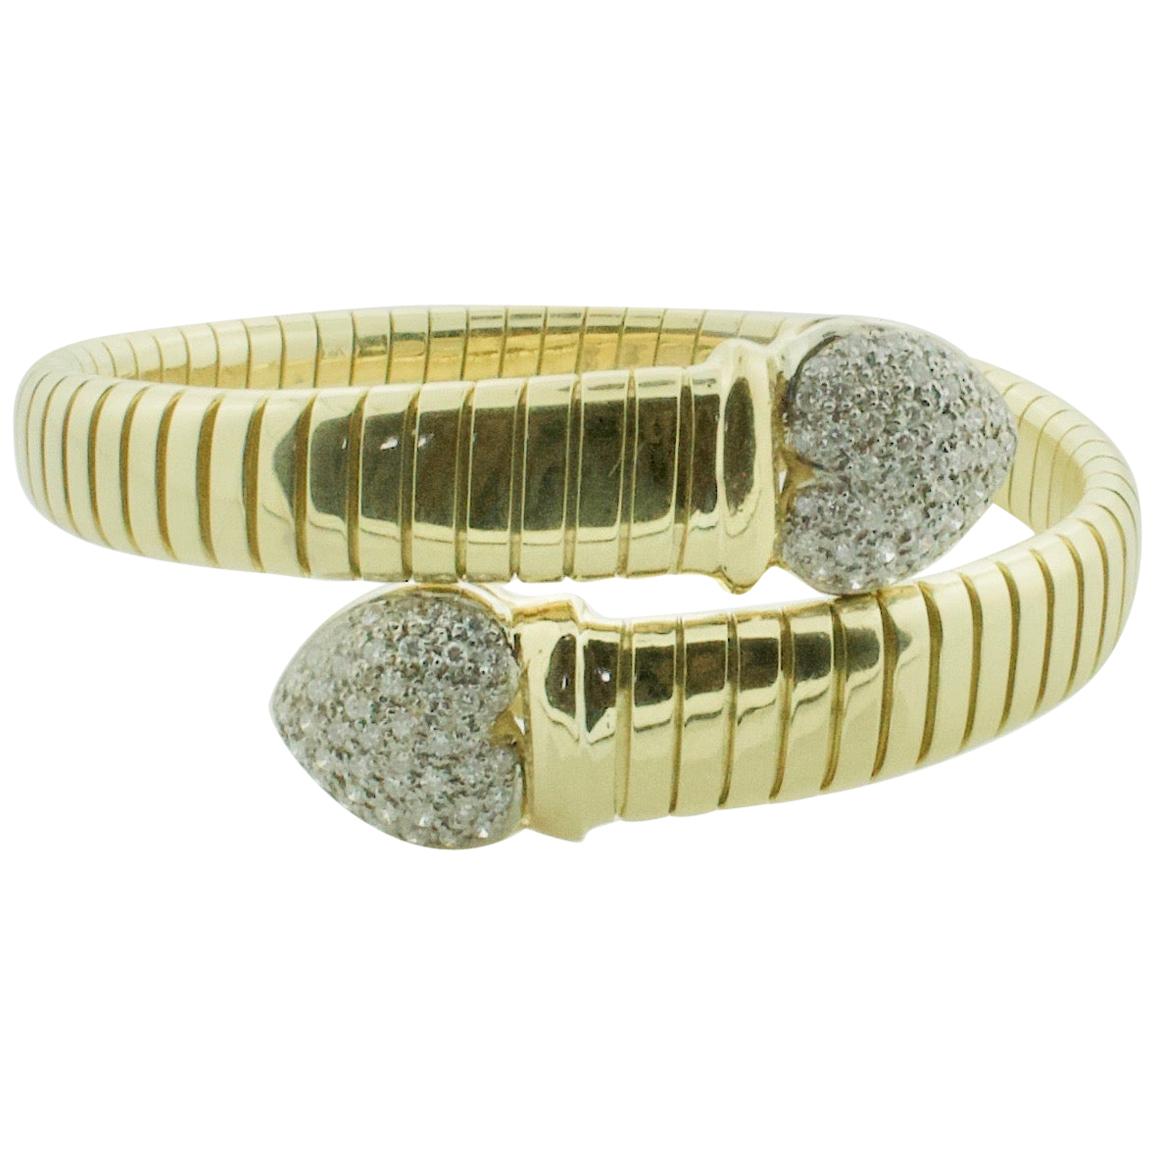 Flexible Diamond Bangle Bracelet in 18 Karat 1.80 Carat